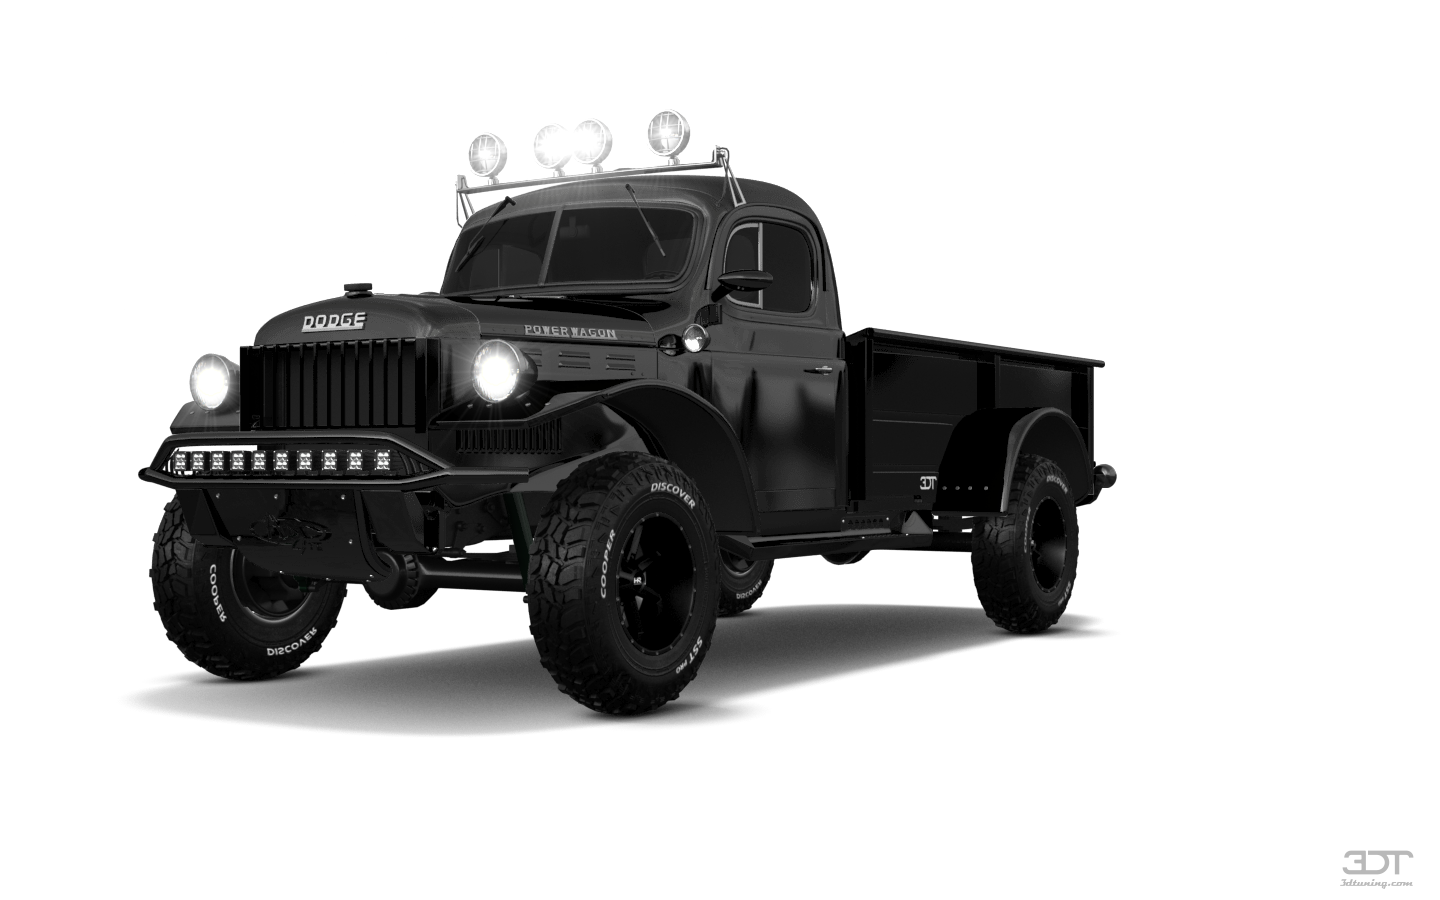 Dodge Power Wagon 2 Door pickup truck 1947